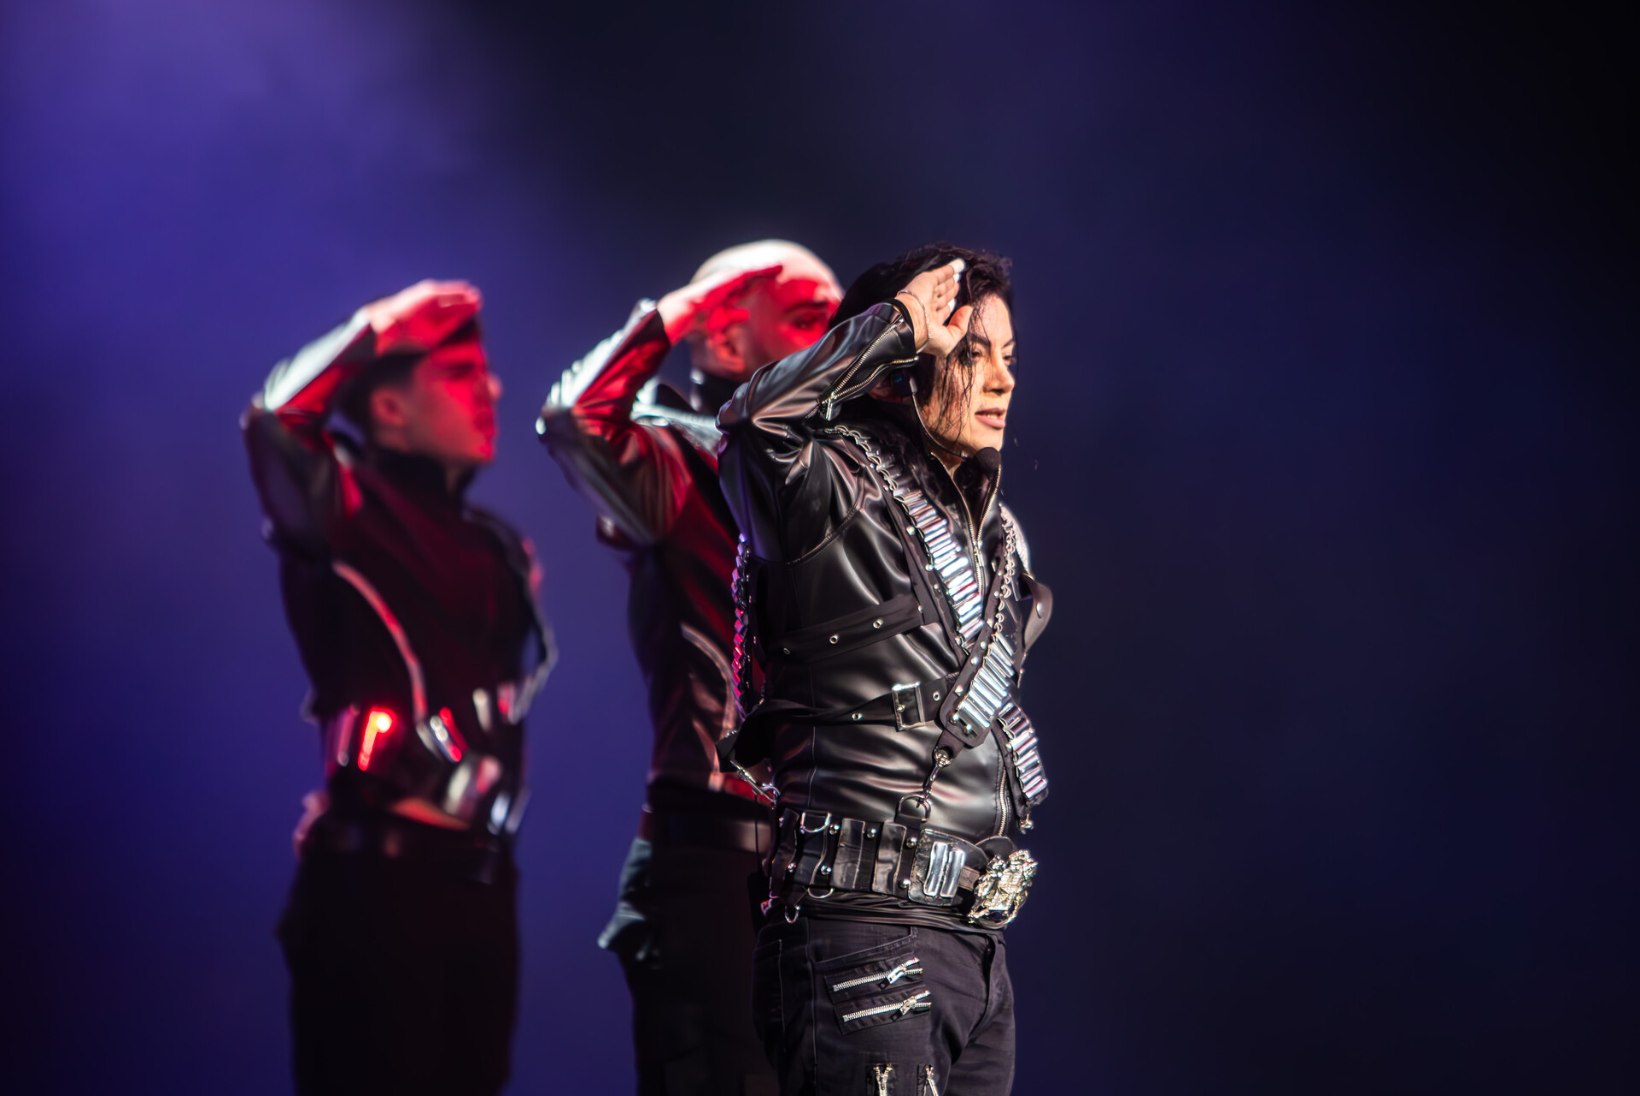 GALERII JA REPORTAAŽ | Peaaegu nagu päris! Michael Jacksoni teisiku kontsert tõmbab rahva käima: üks daam tantsib terve aja vahekäigus